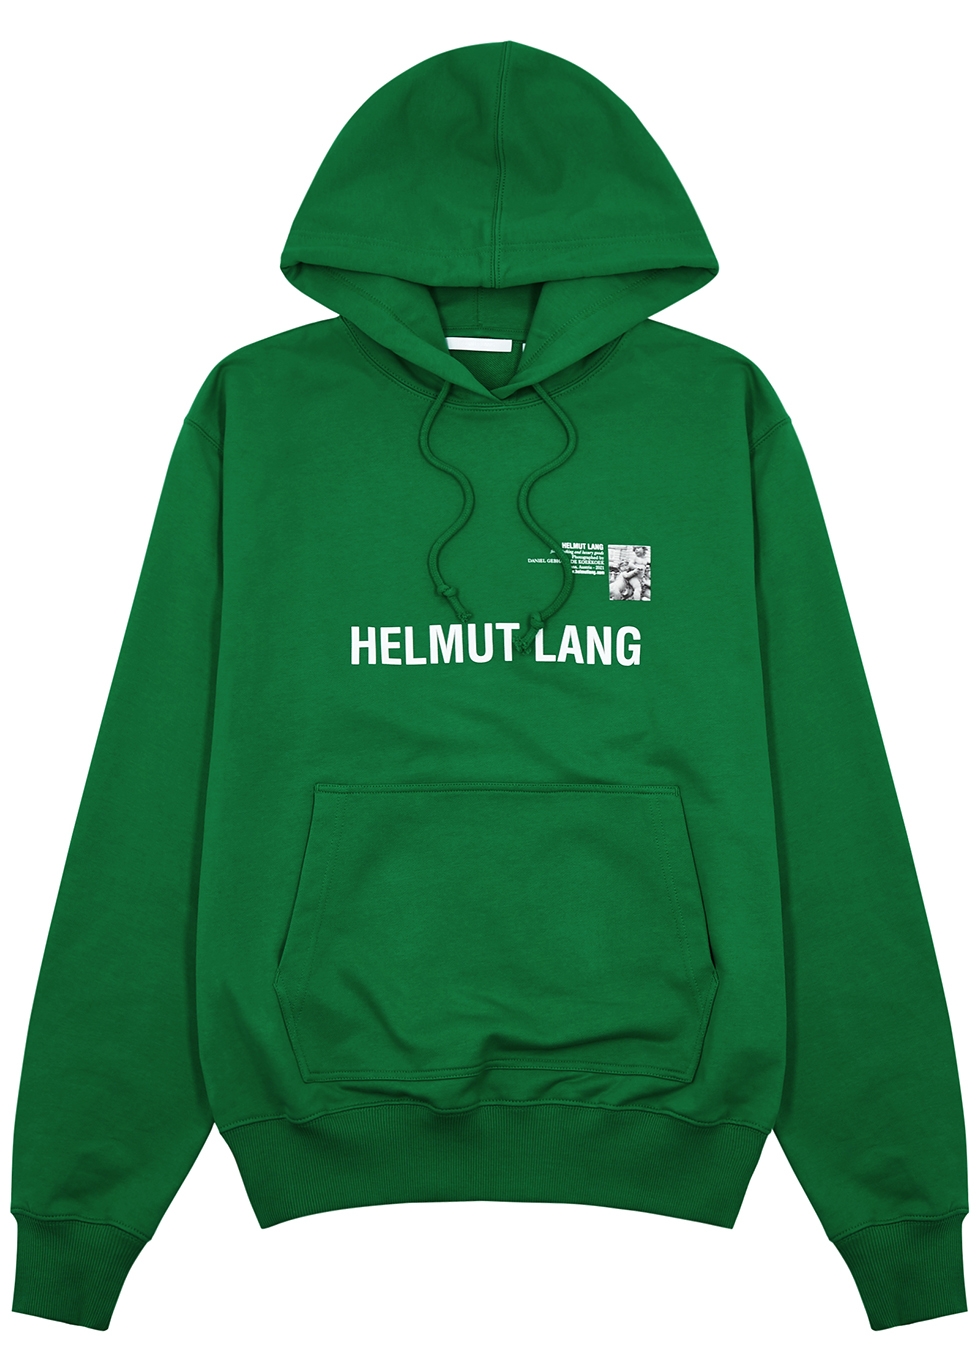 Helmut Lang X Daniel Gebhart de Koekkoek green hooded cotton sweatshirt